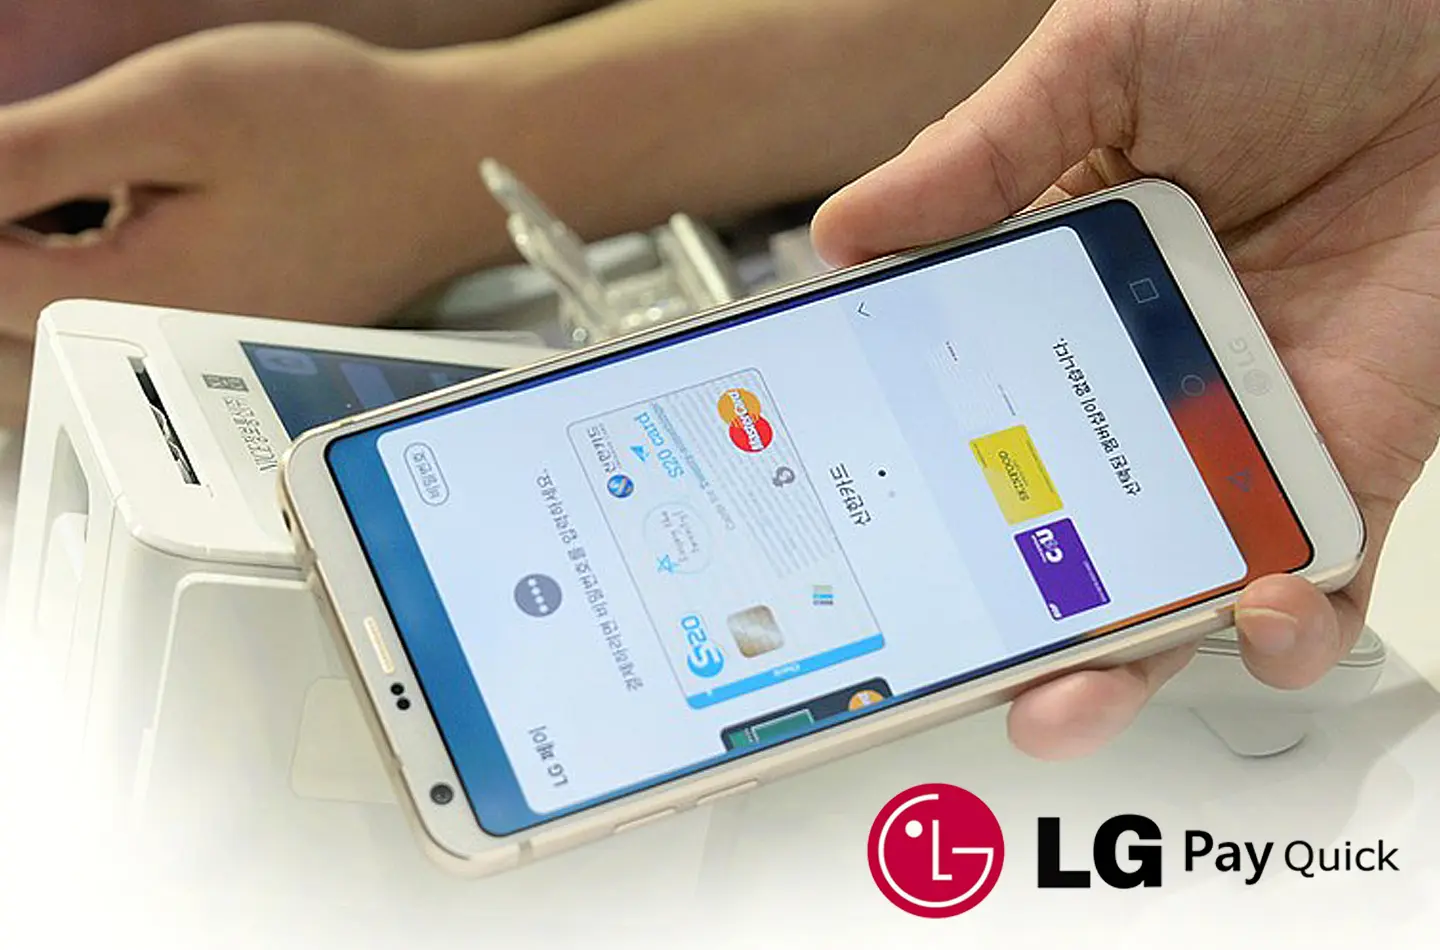 LG Pay Quick, un nuevo sistema de pagos móviles para Europa, USA y Corea del Sur